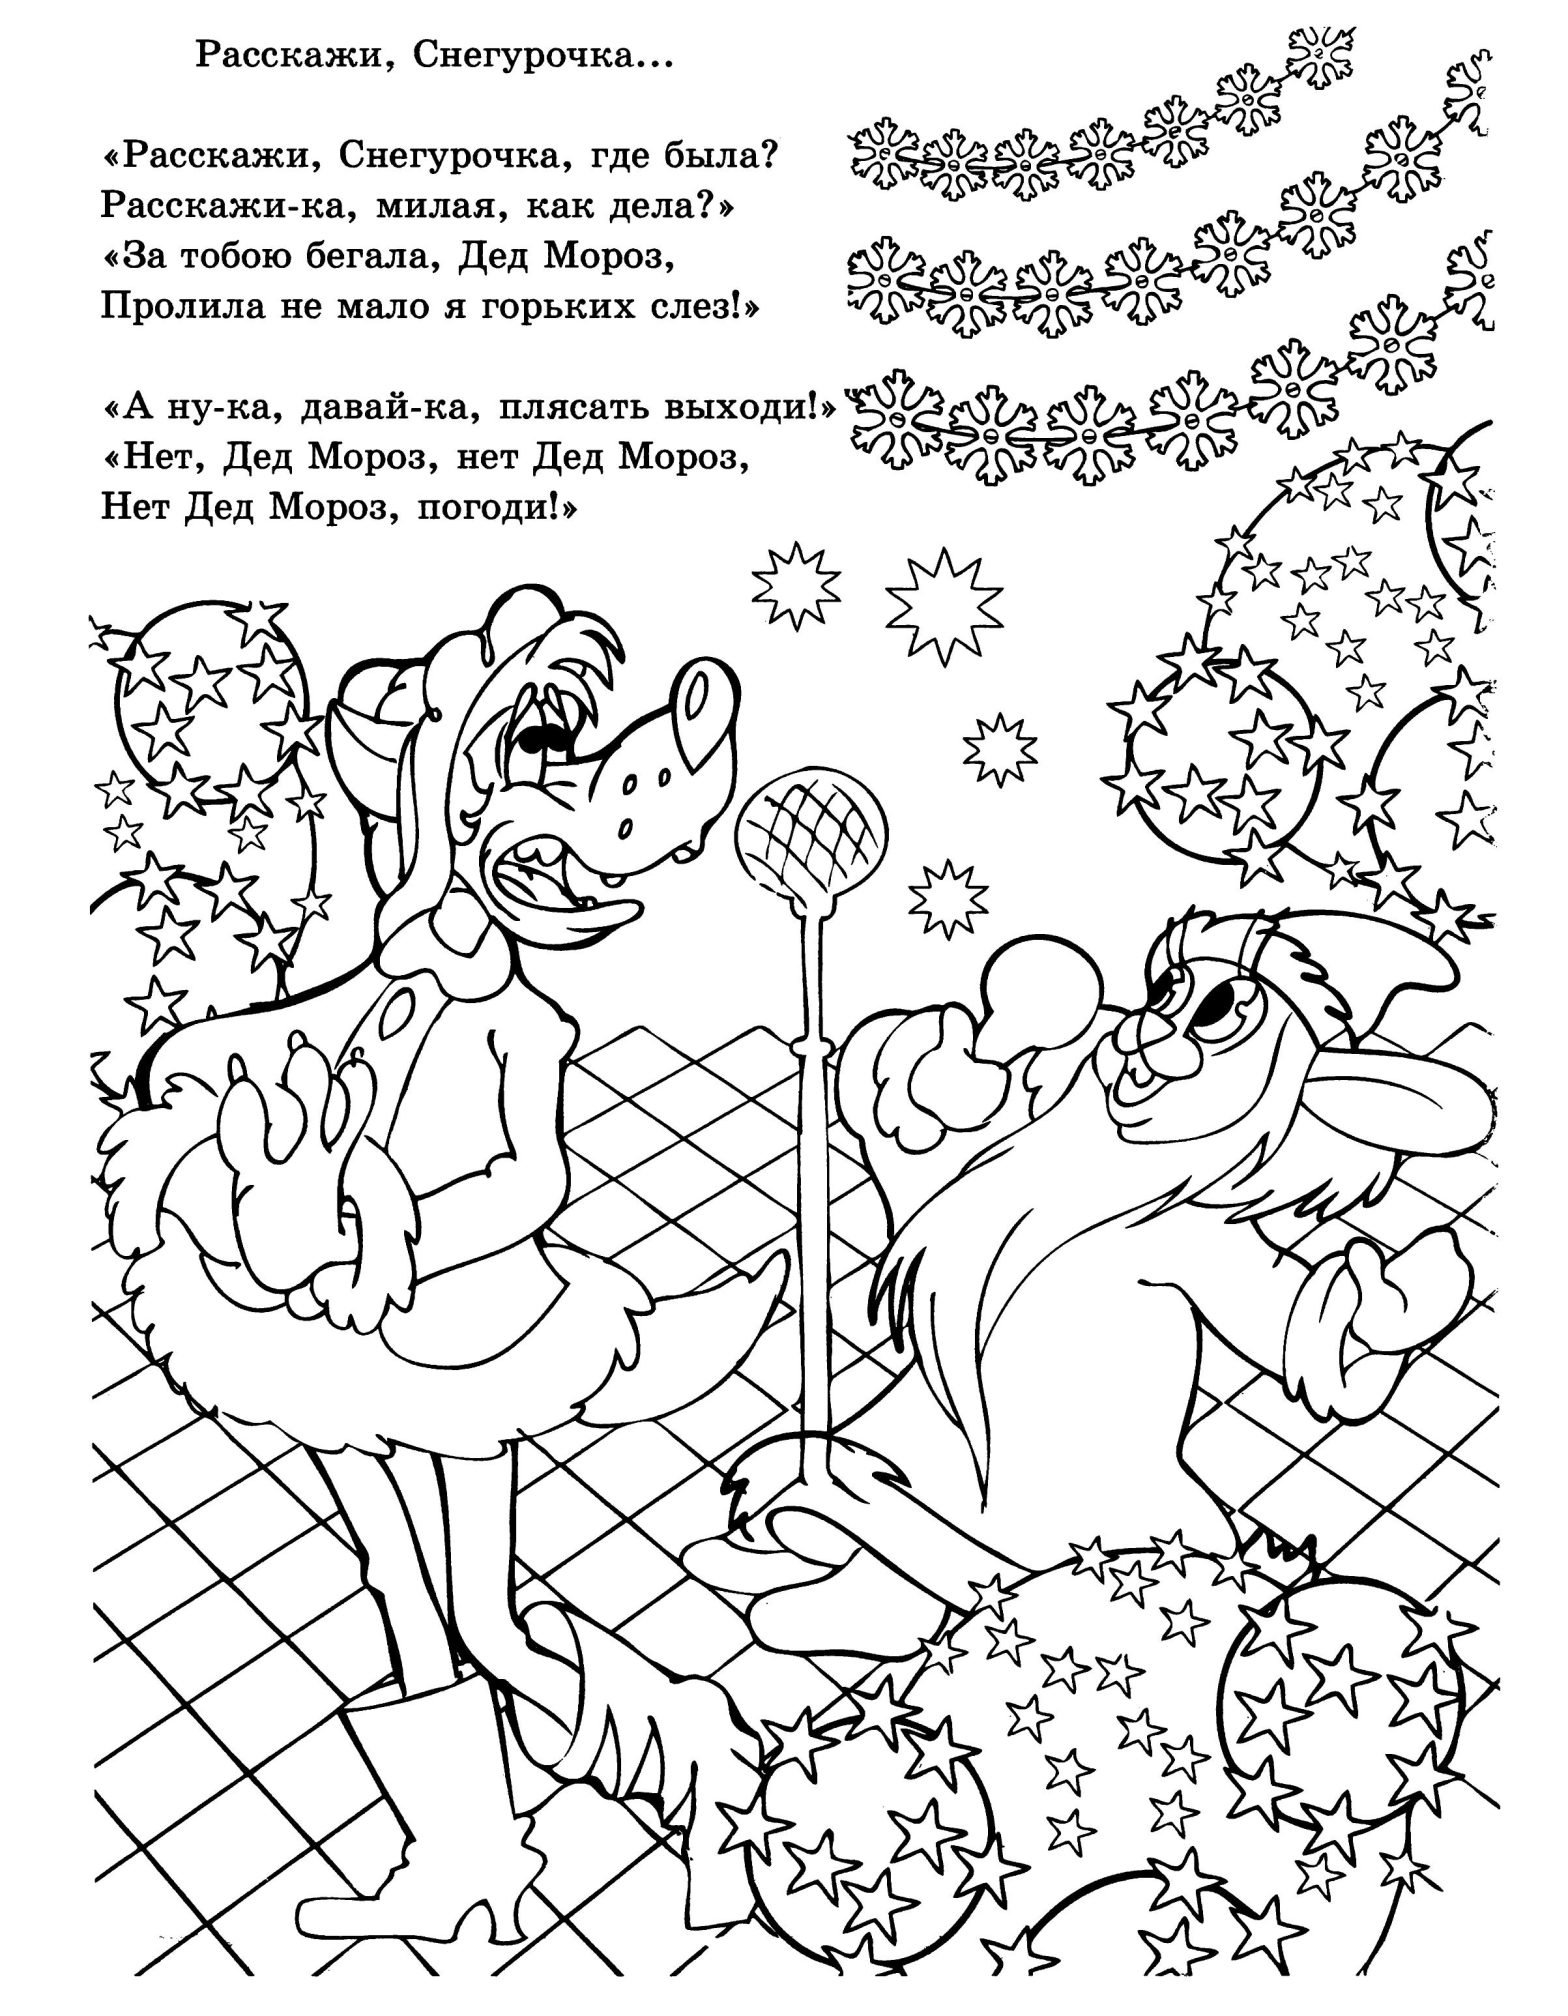 Раскраска зайца и волка из мультфильма Ну, погоди! в костюмах снегурочки деда мороза на фоне зимнего пейзажа (зима, заяц, волк)